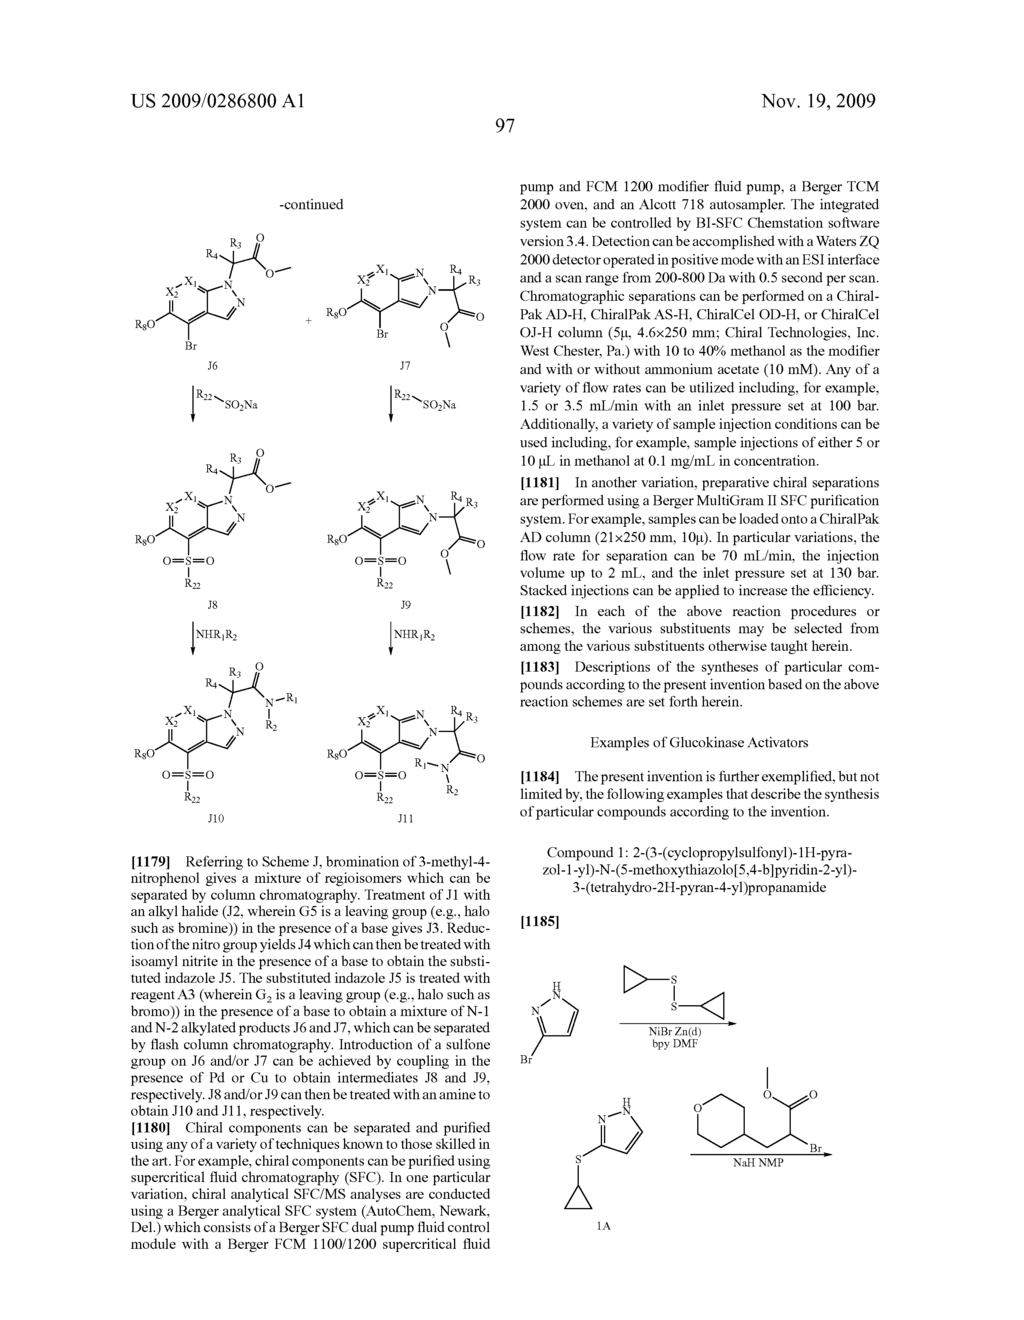 Glucokinase Activators - diagram, schematic, and image 99